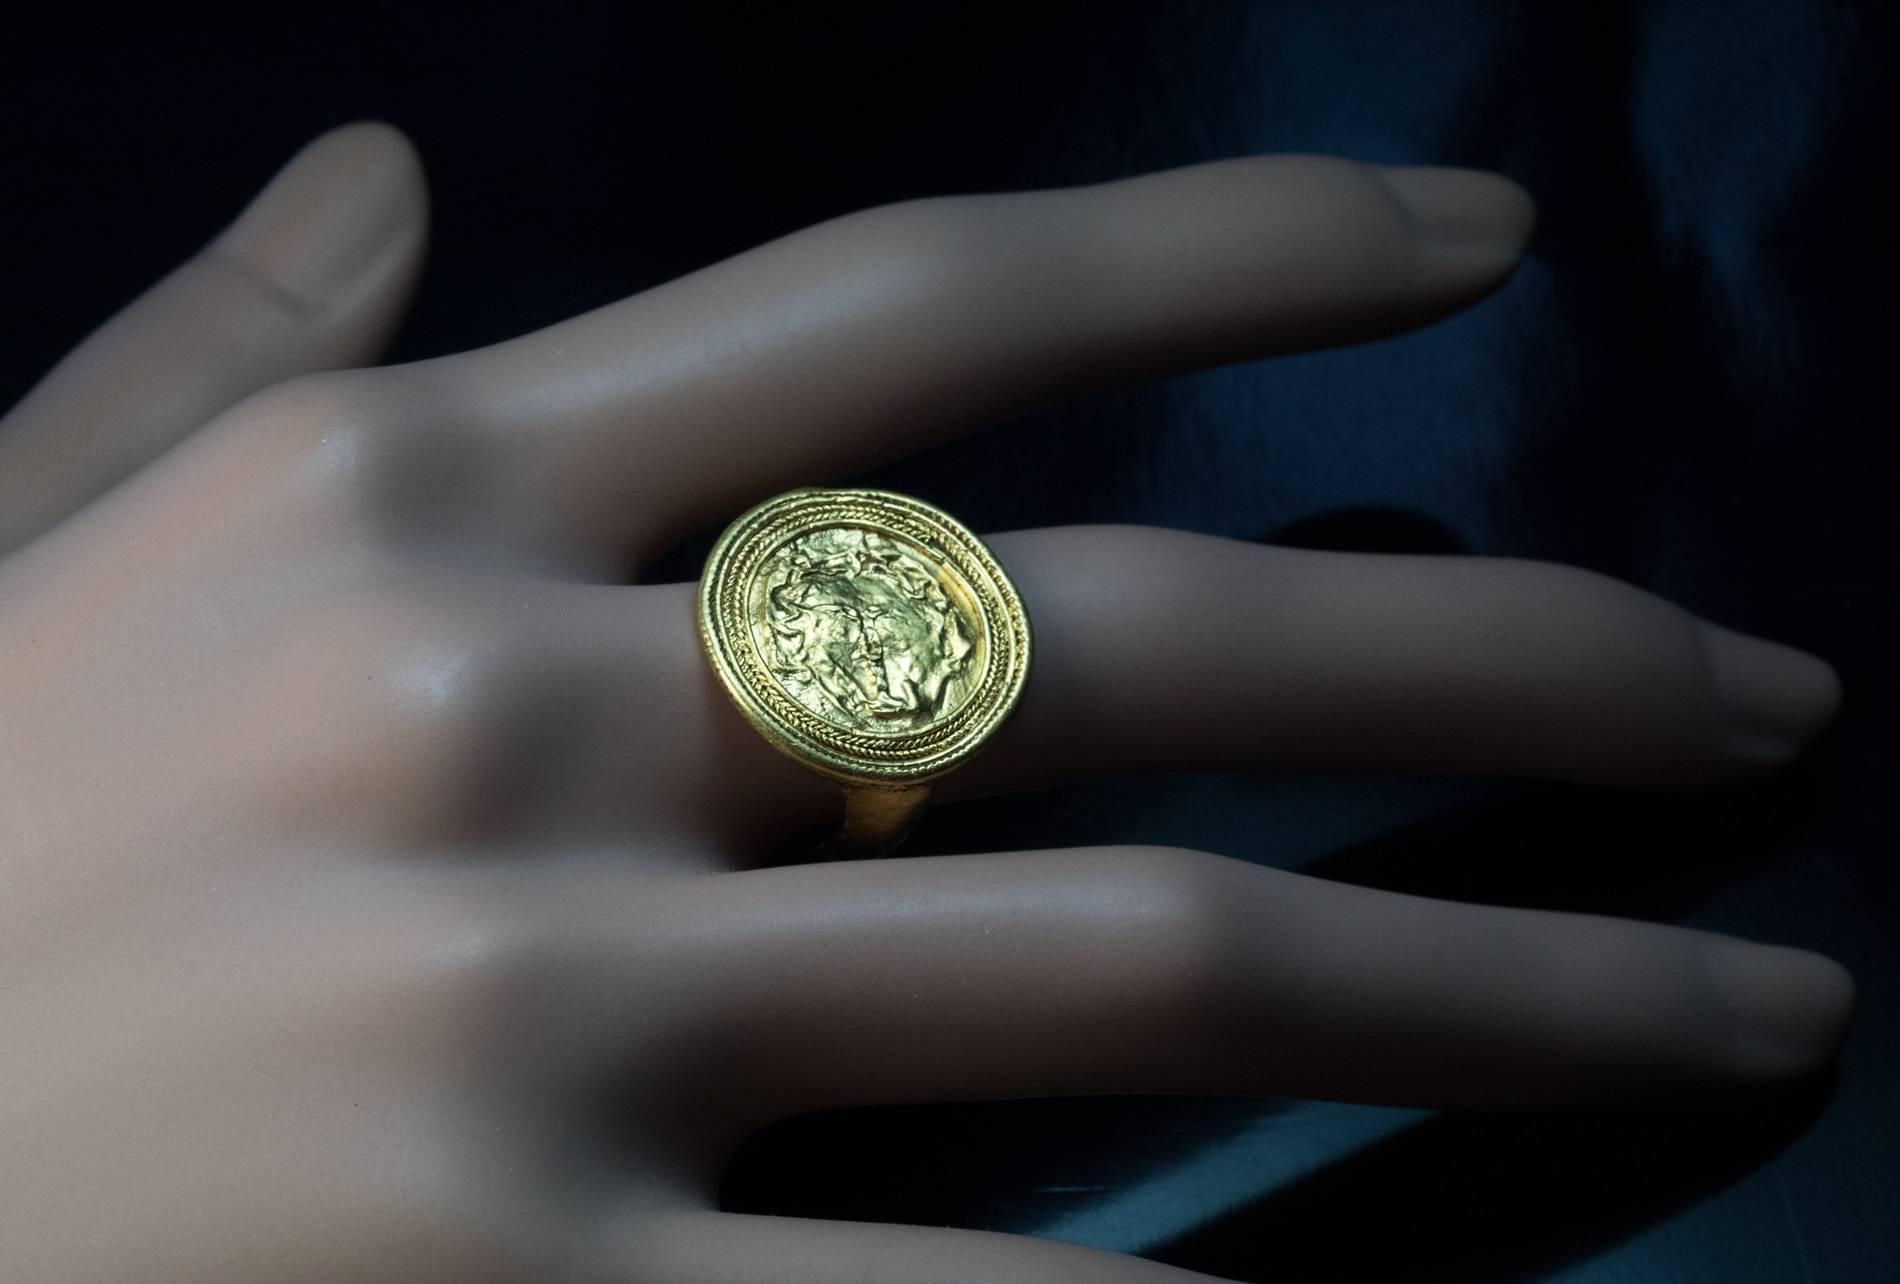 Antiker Kopf der Medusa Goldring

um 300 v. Chr.

Dieser Ring aus hochkarätigem hellenistischem Gold ist als Goldscheibe mit einer horizontal angeordneten archaischen Reliefbüste der Medusa gestaltet, die von zwei Reihen gedrehter Golddrähte